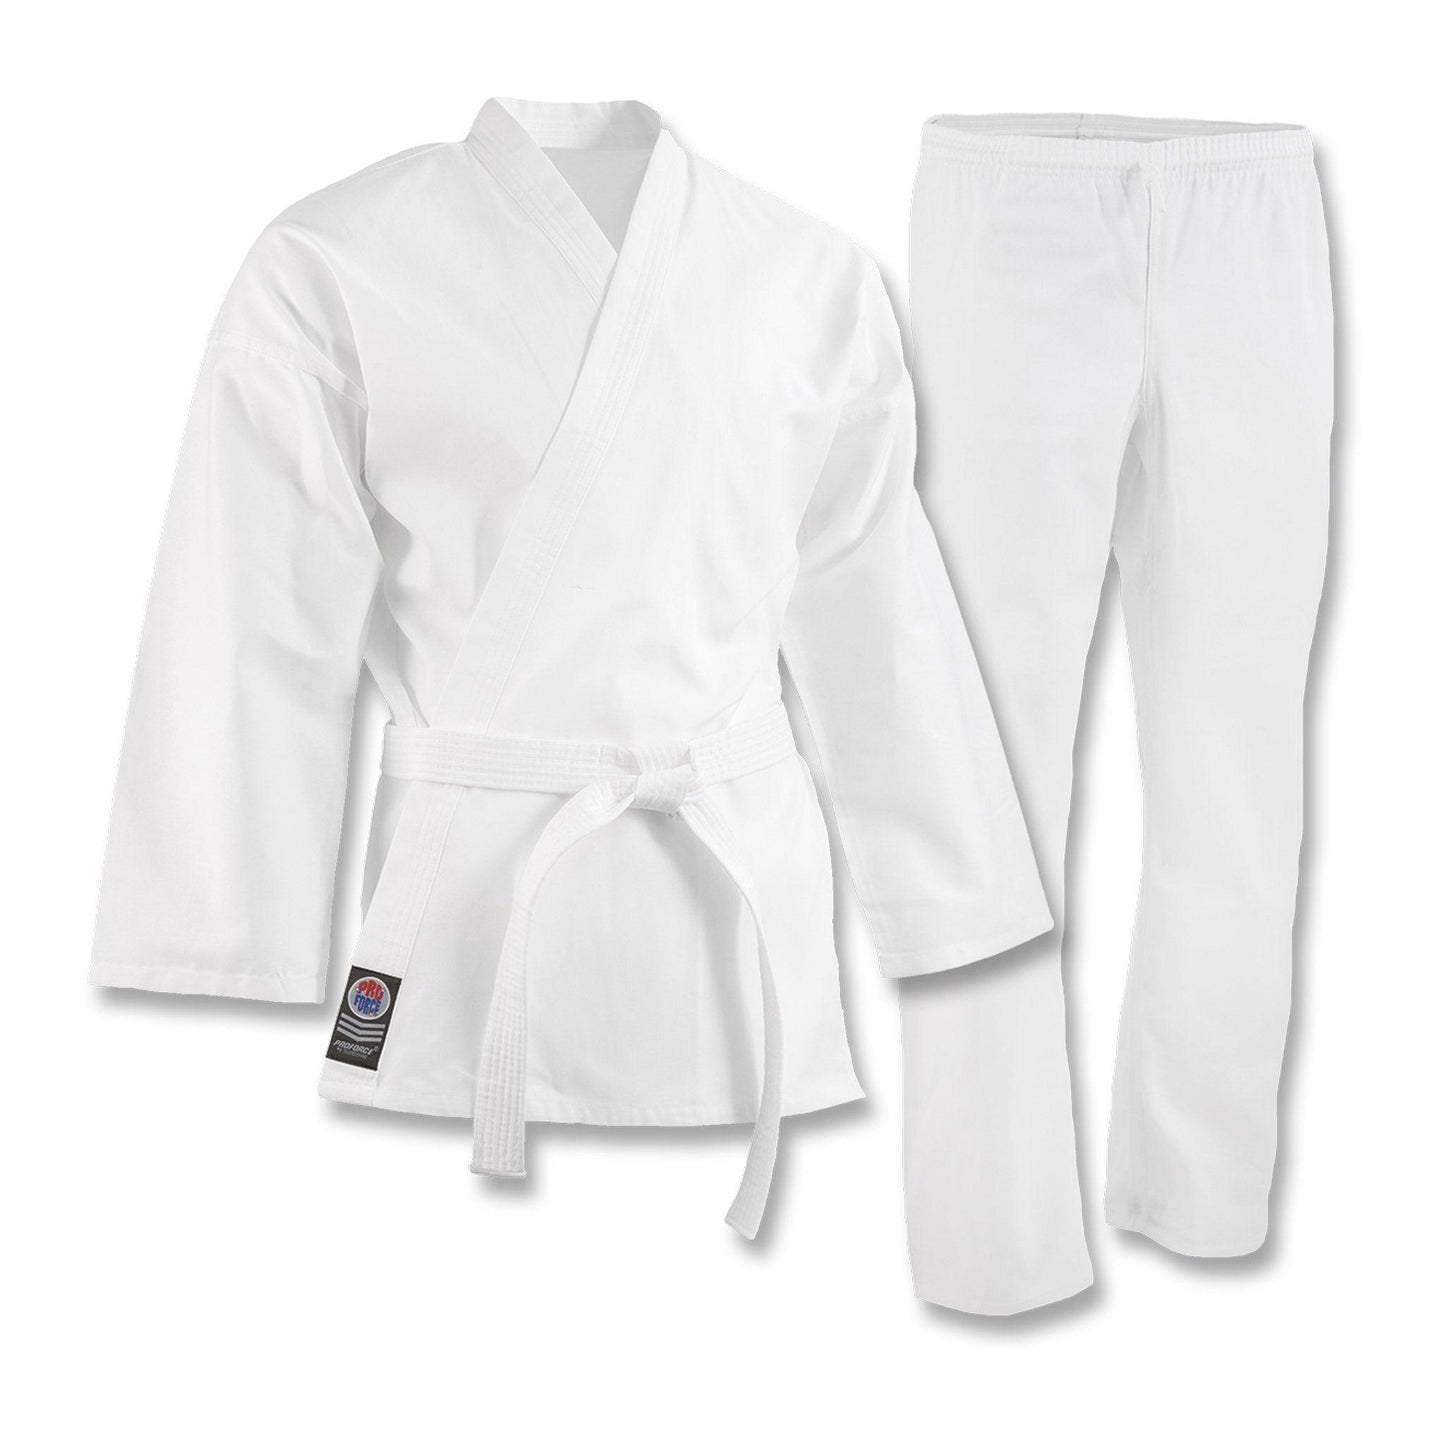 ProForce 5 oz. Original Karate Uniform (Elastic Drawstring) - 55/45 Blend - With Free White Belt - Violent Art Shop